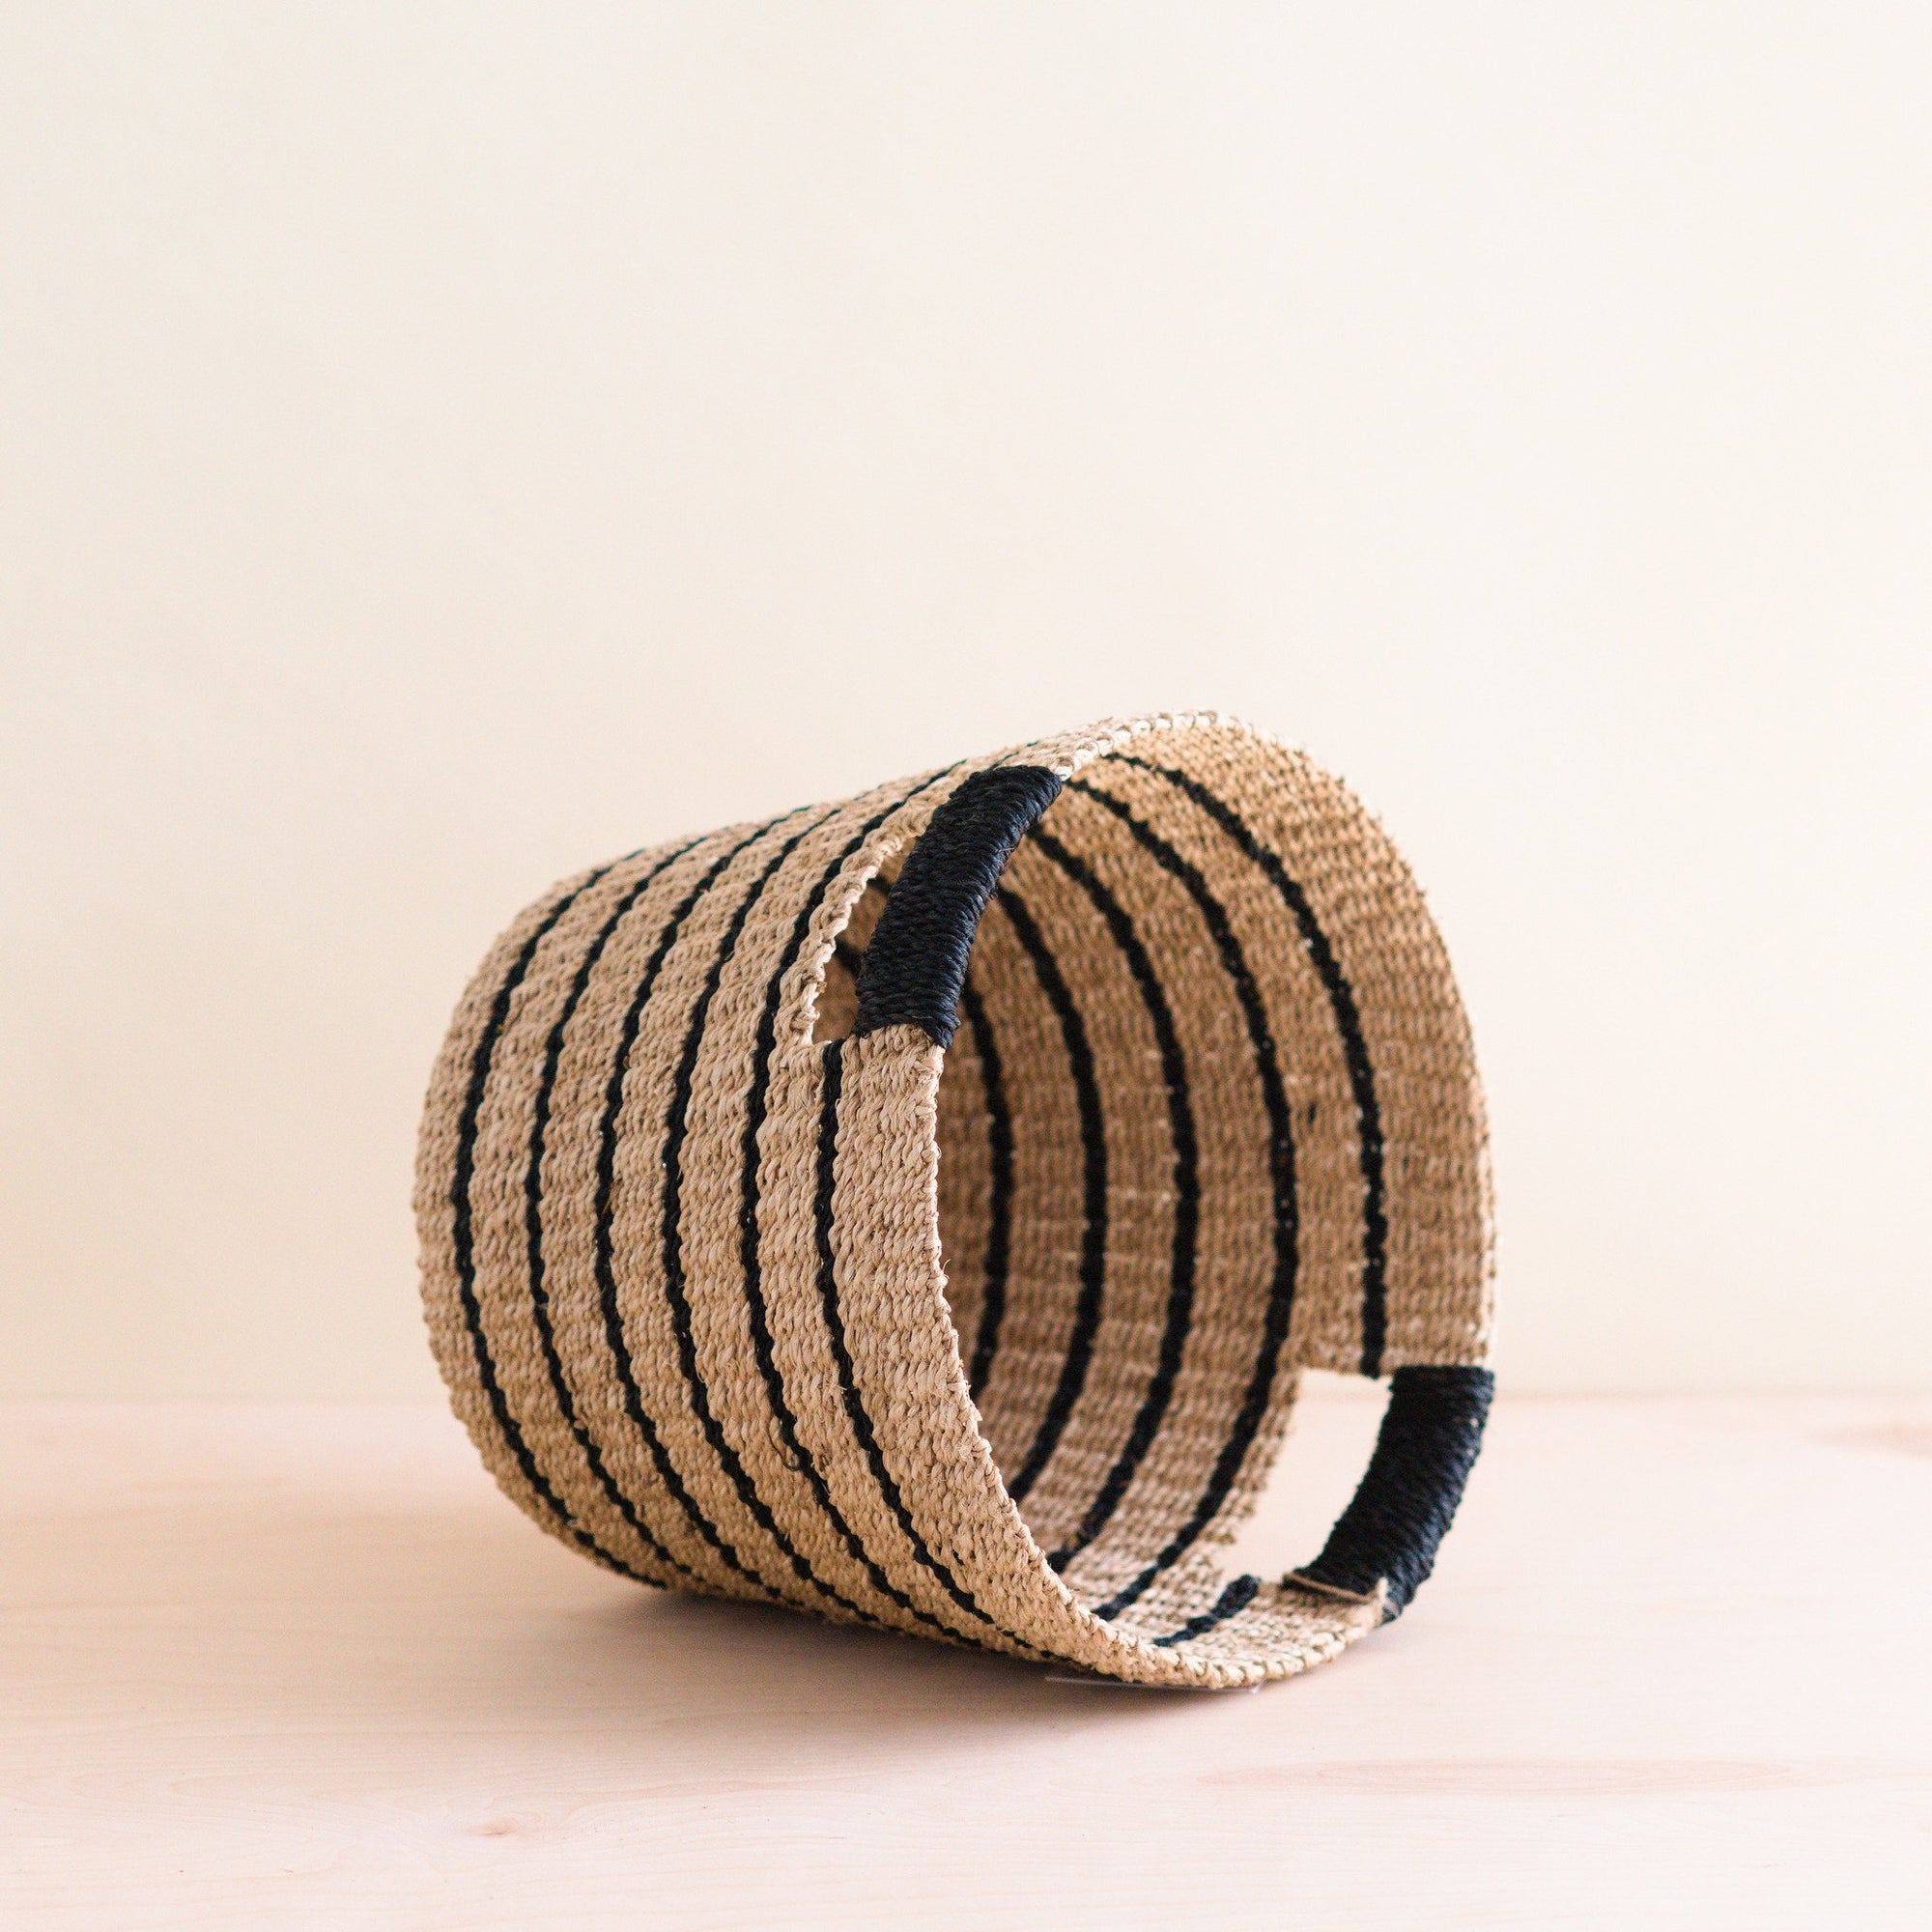 Baskets - Black + Natural Striped Tapered Basket - Modern Baskets | LIKHA - LIKHÂ